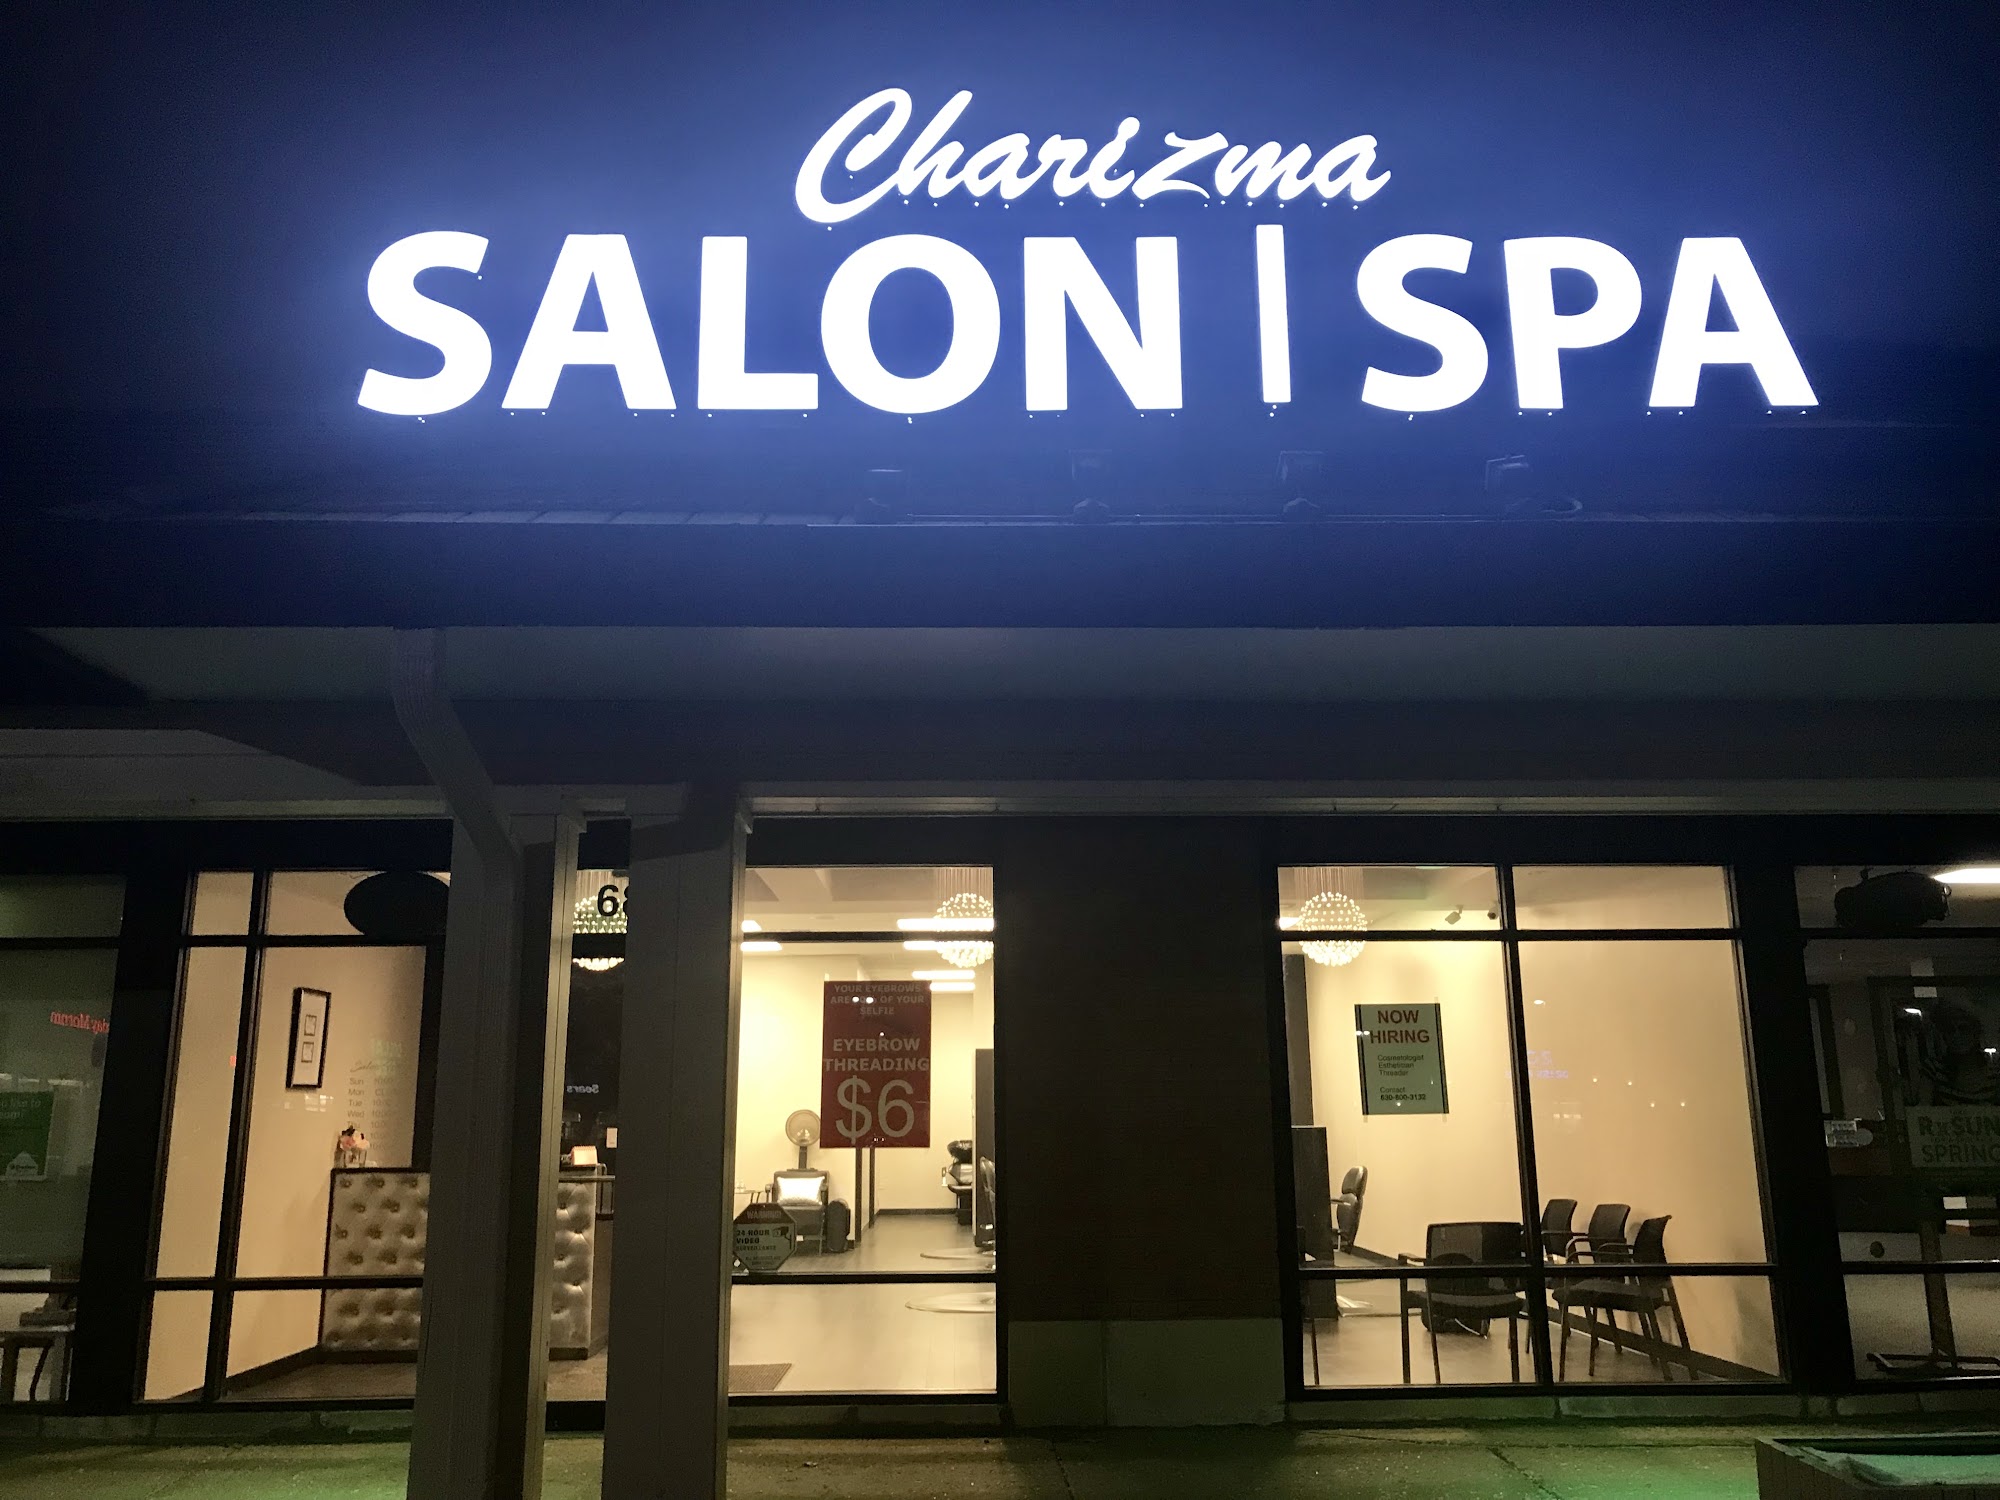 Charizma Salon & Spa